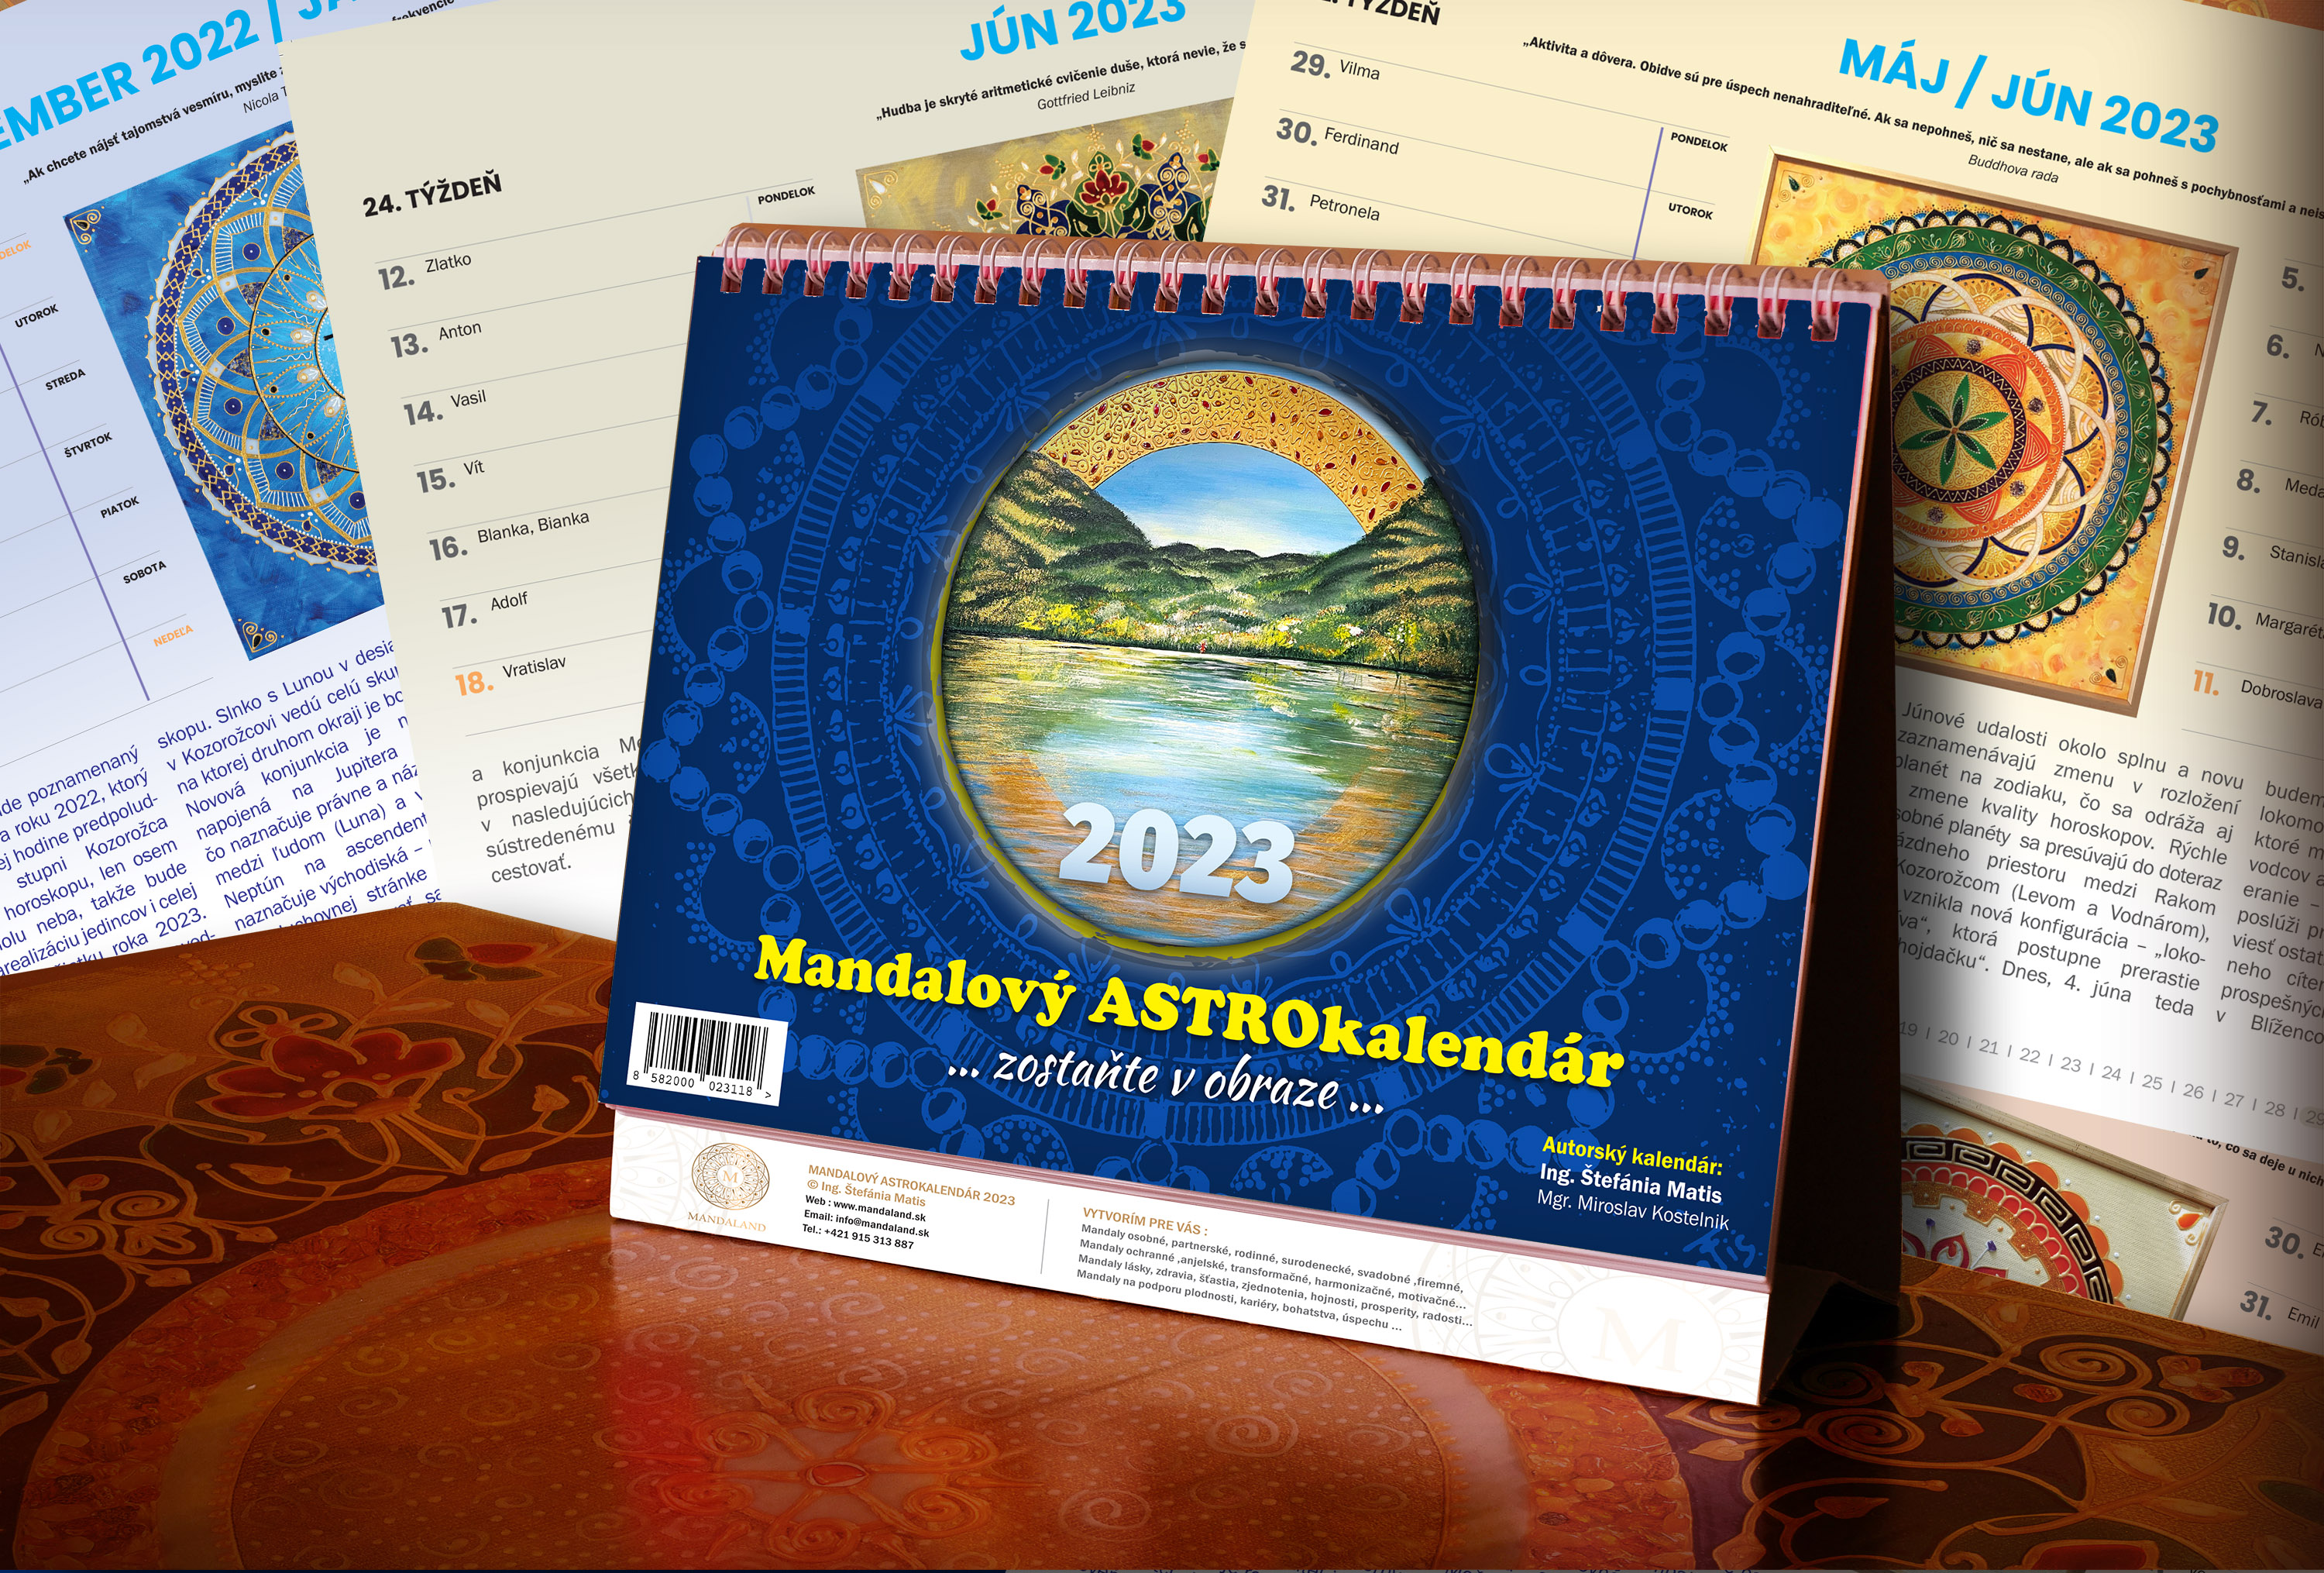 Mandalový astro-kalendár 2023 “ zostaňte v obraze“_product